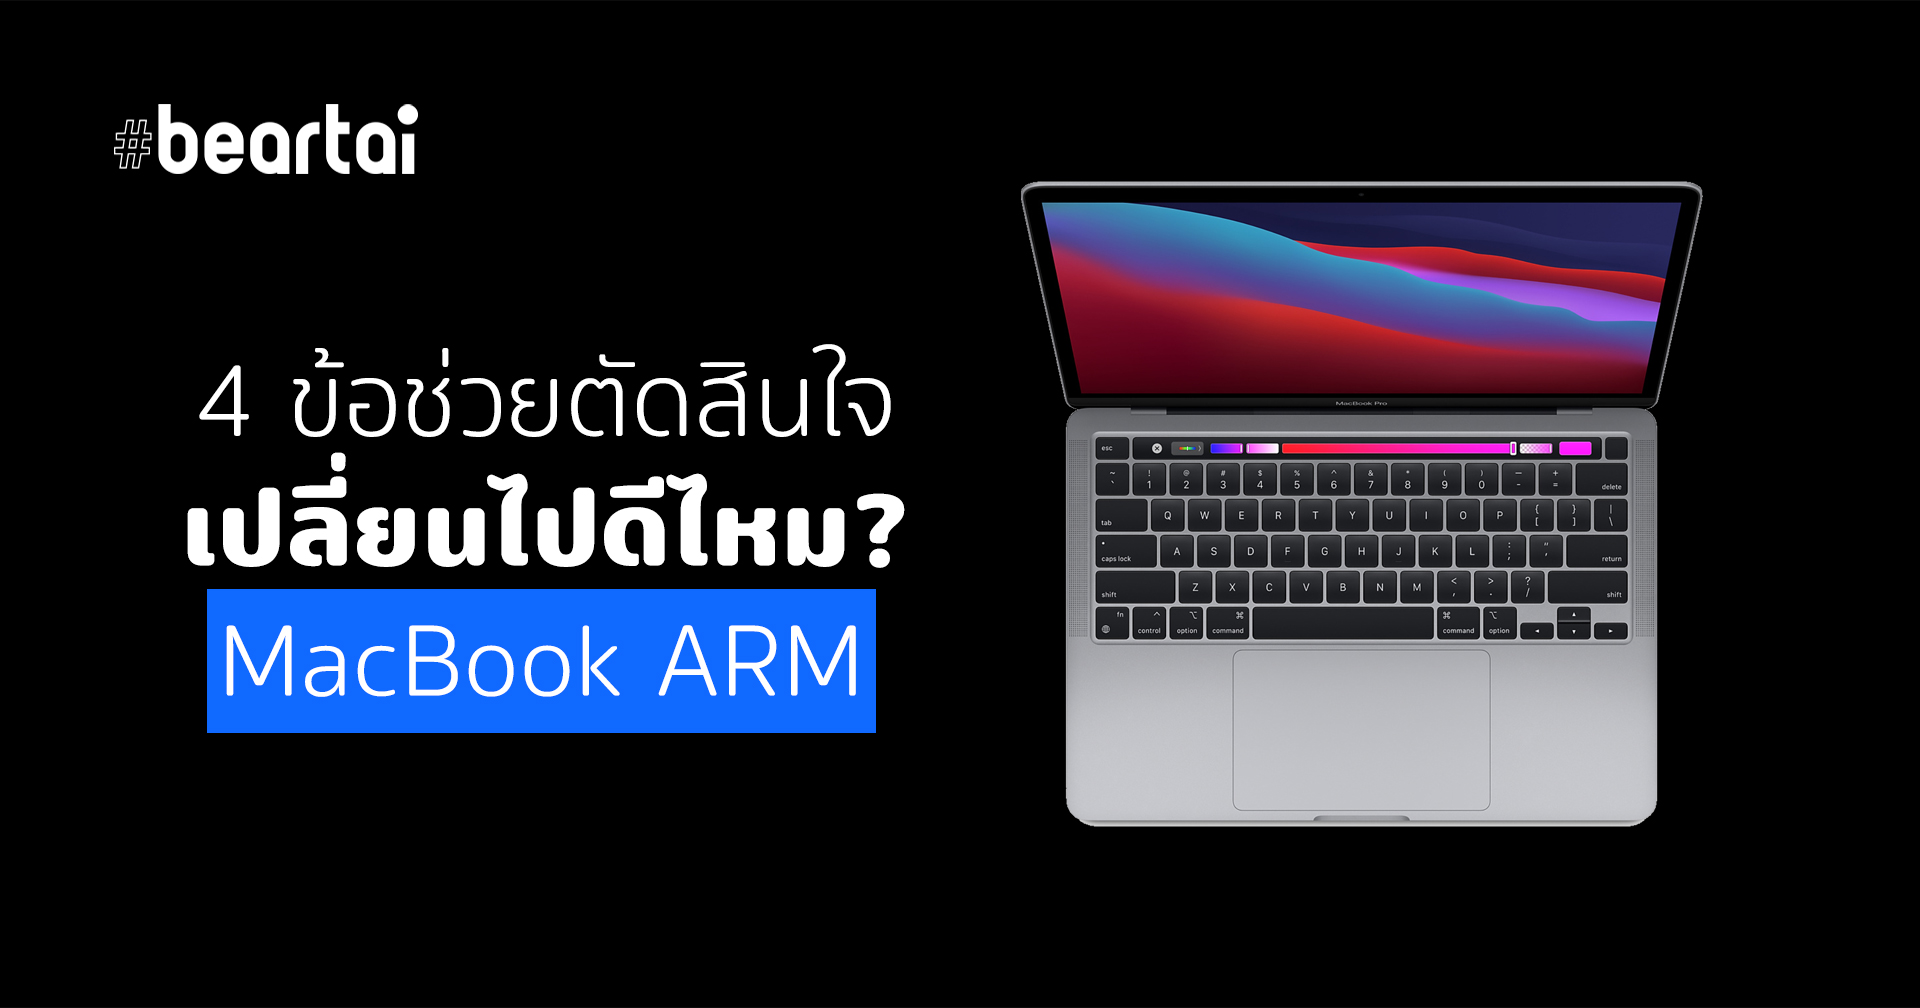 4 ข้อช่วยตัดสินใจ เปลี่ยนไปดีไหม? MacBook ARM